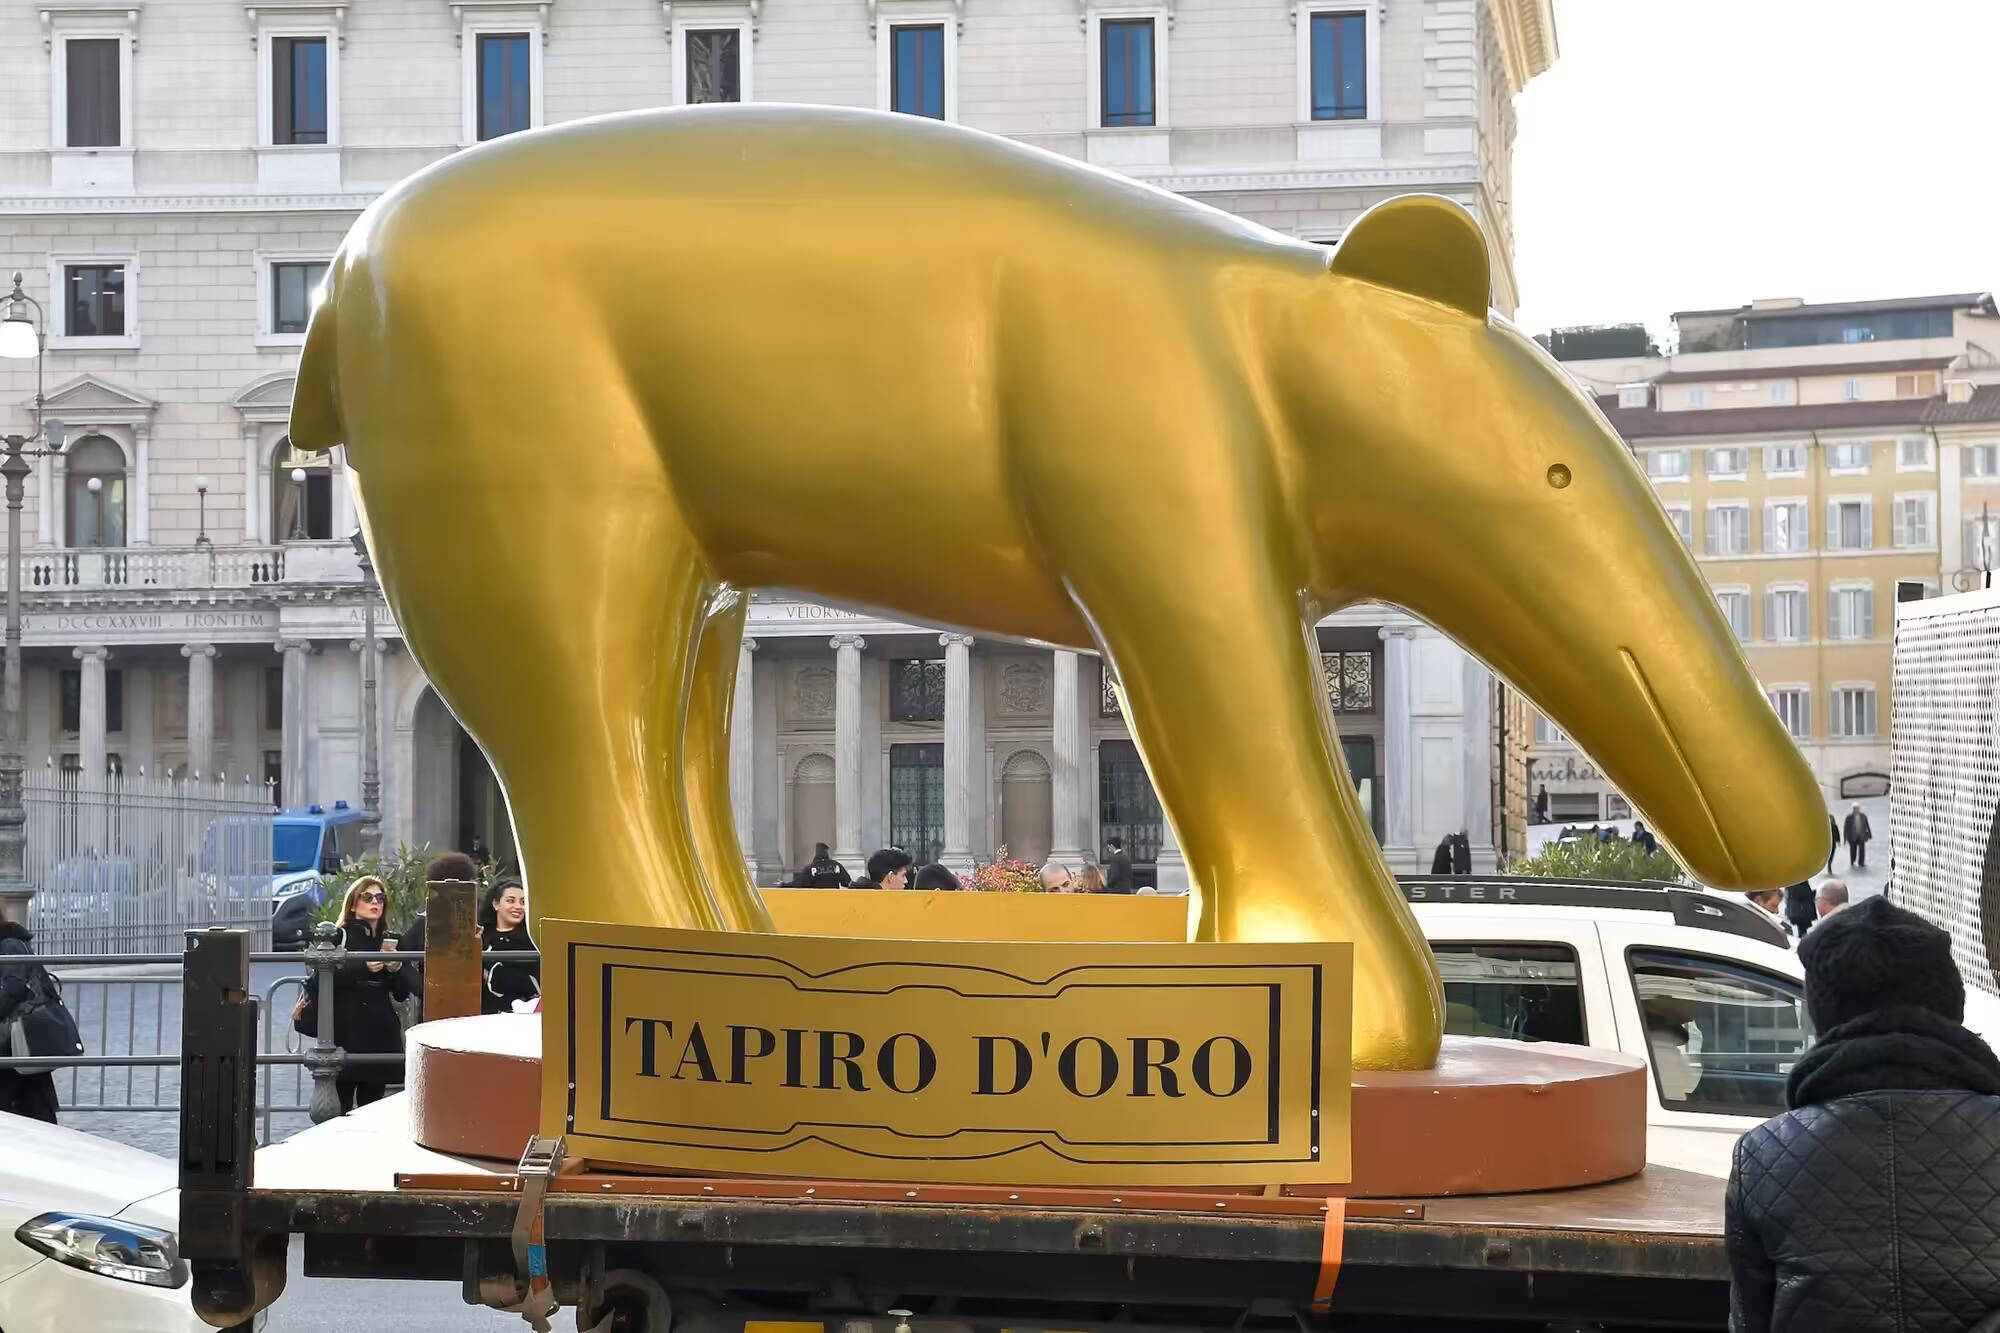 Il tapiro d'oro di Striscia la notizia